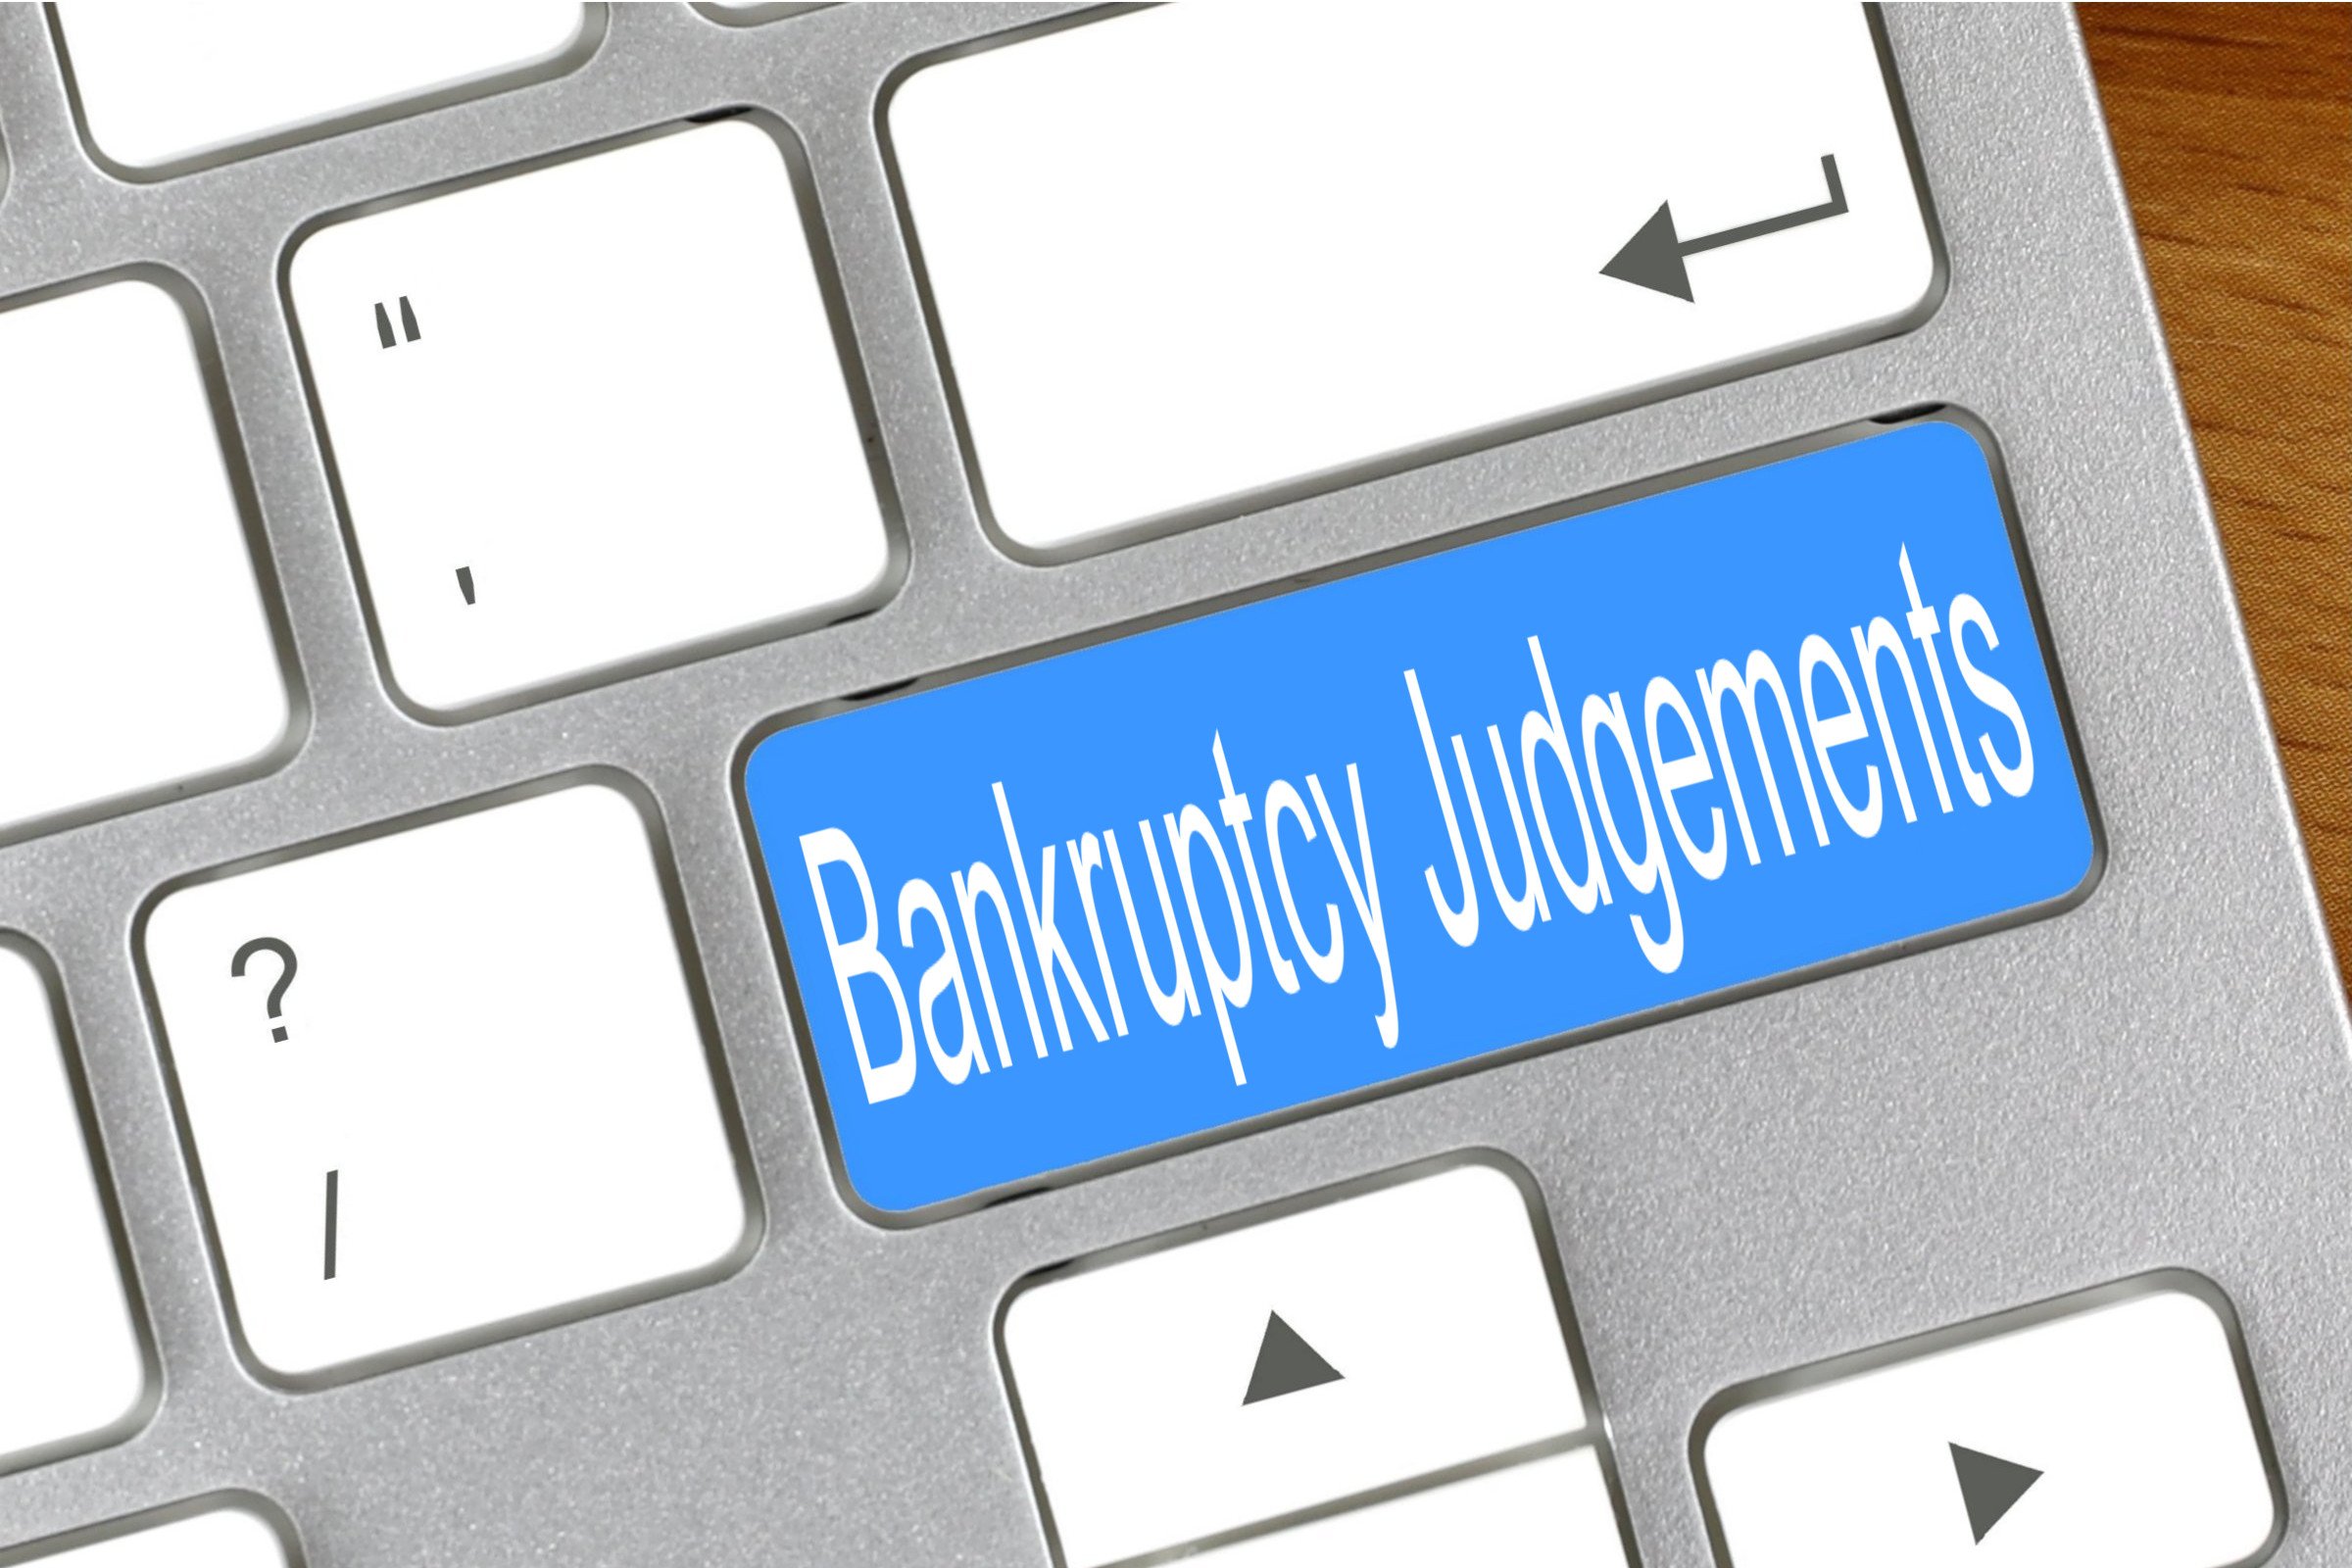 bankruptcy judgements